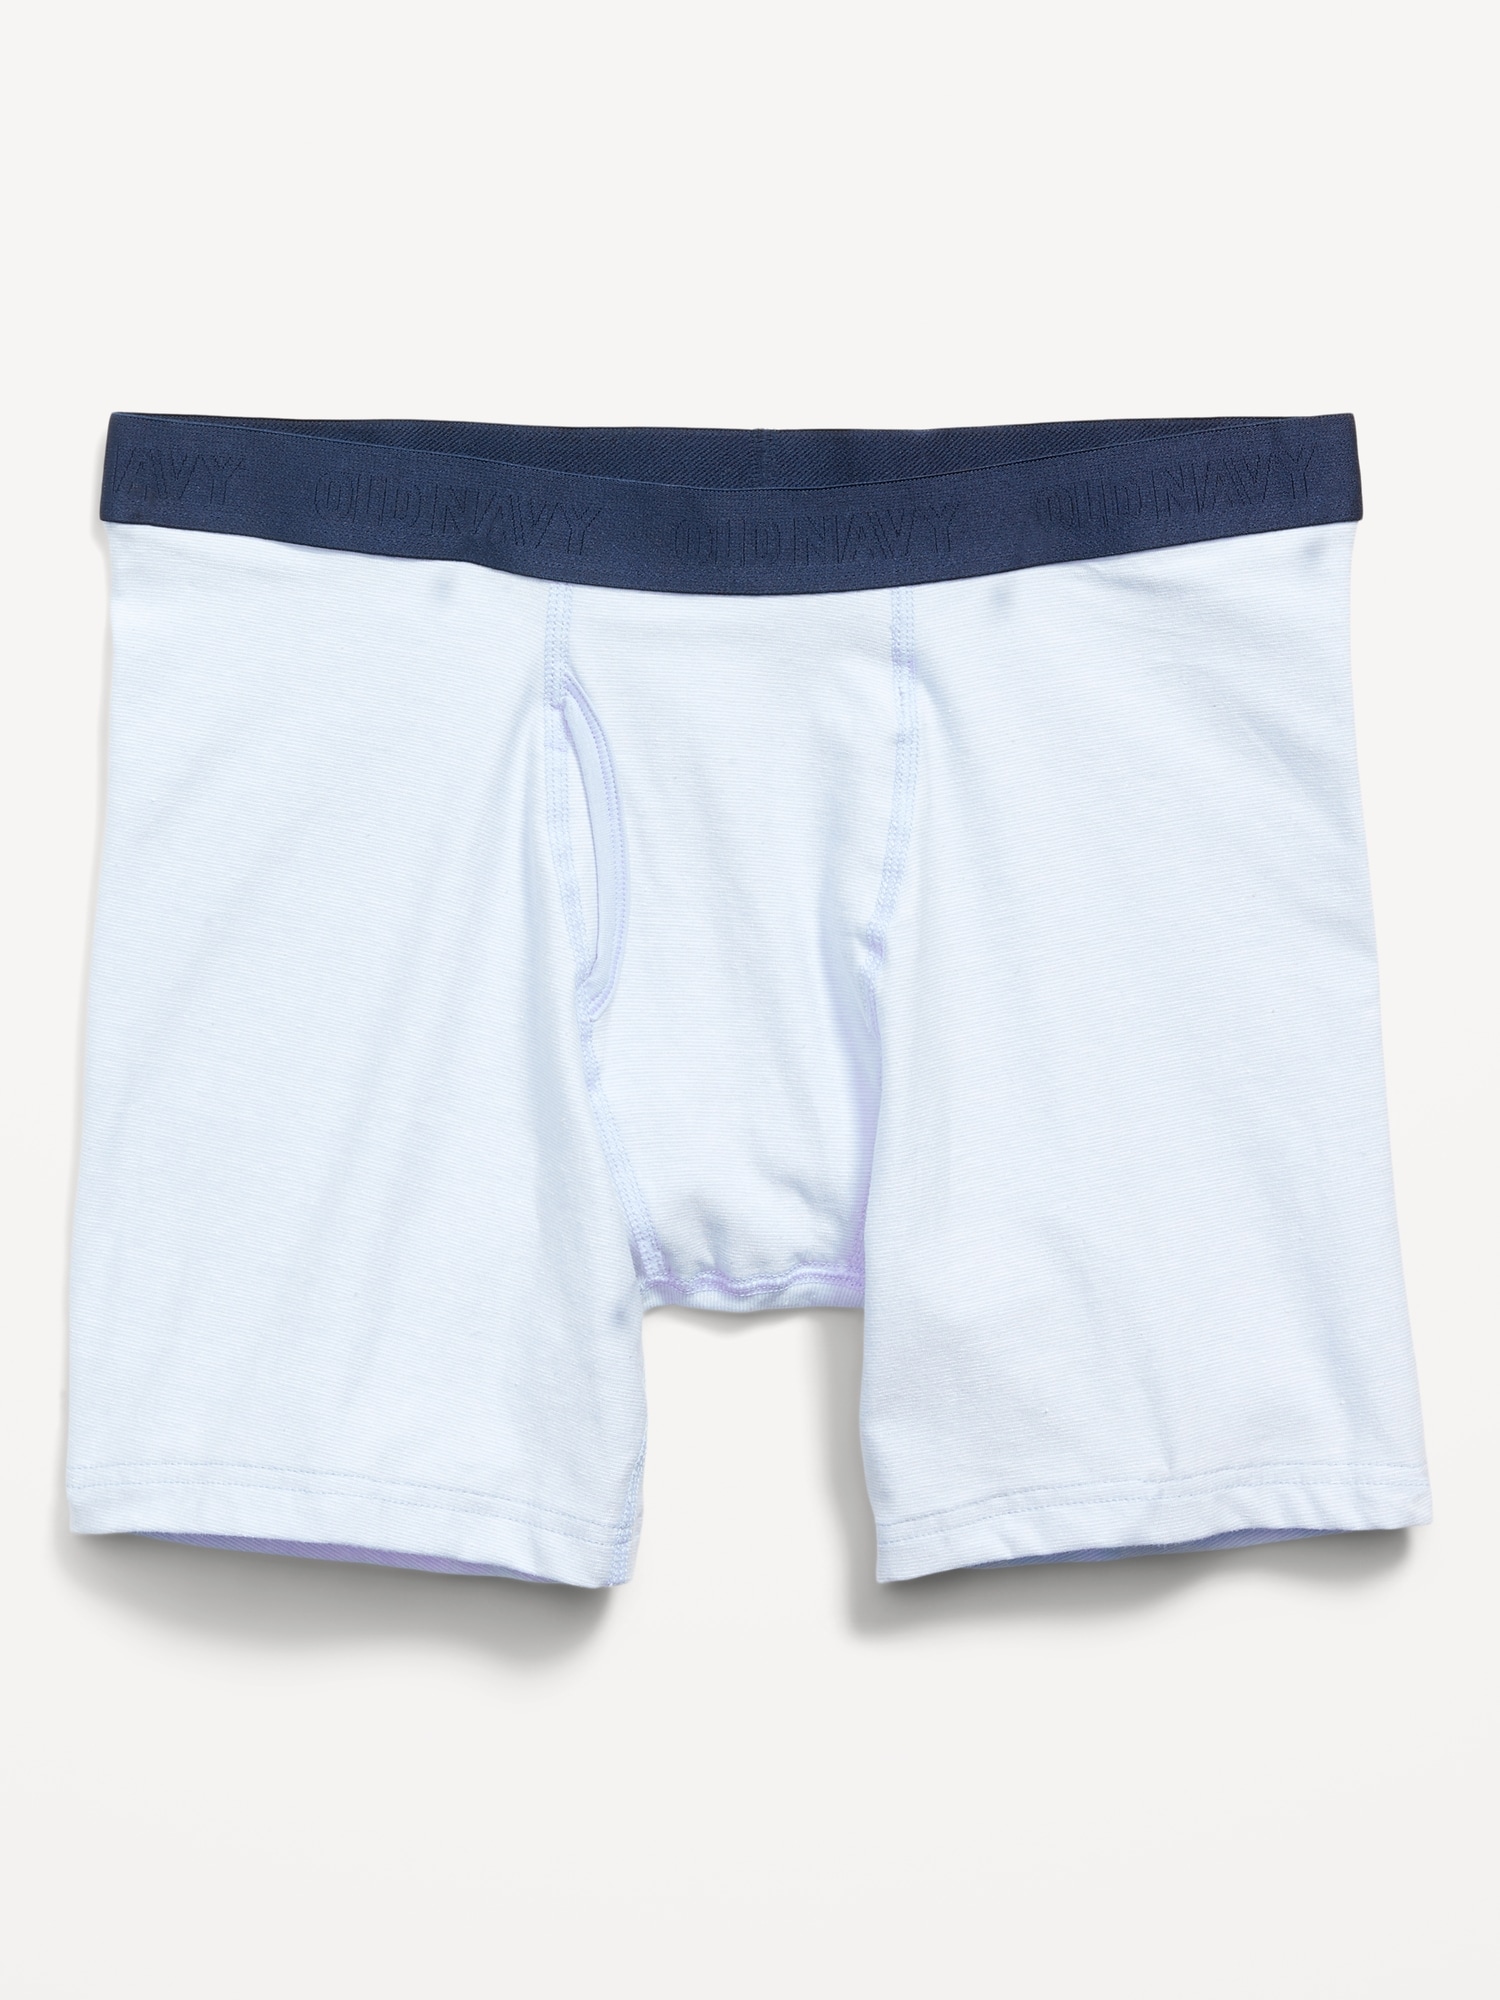 Old Navy Printed Built-In Flex Boxer-Brief Underwear for Men -- 6.25-inch inseam blue. 1